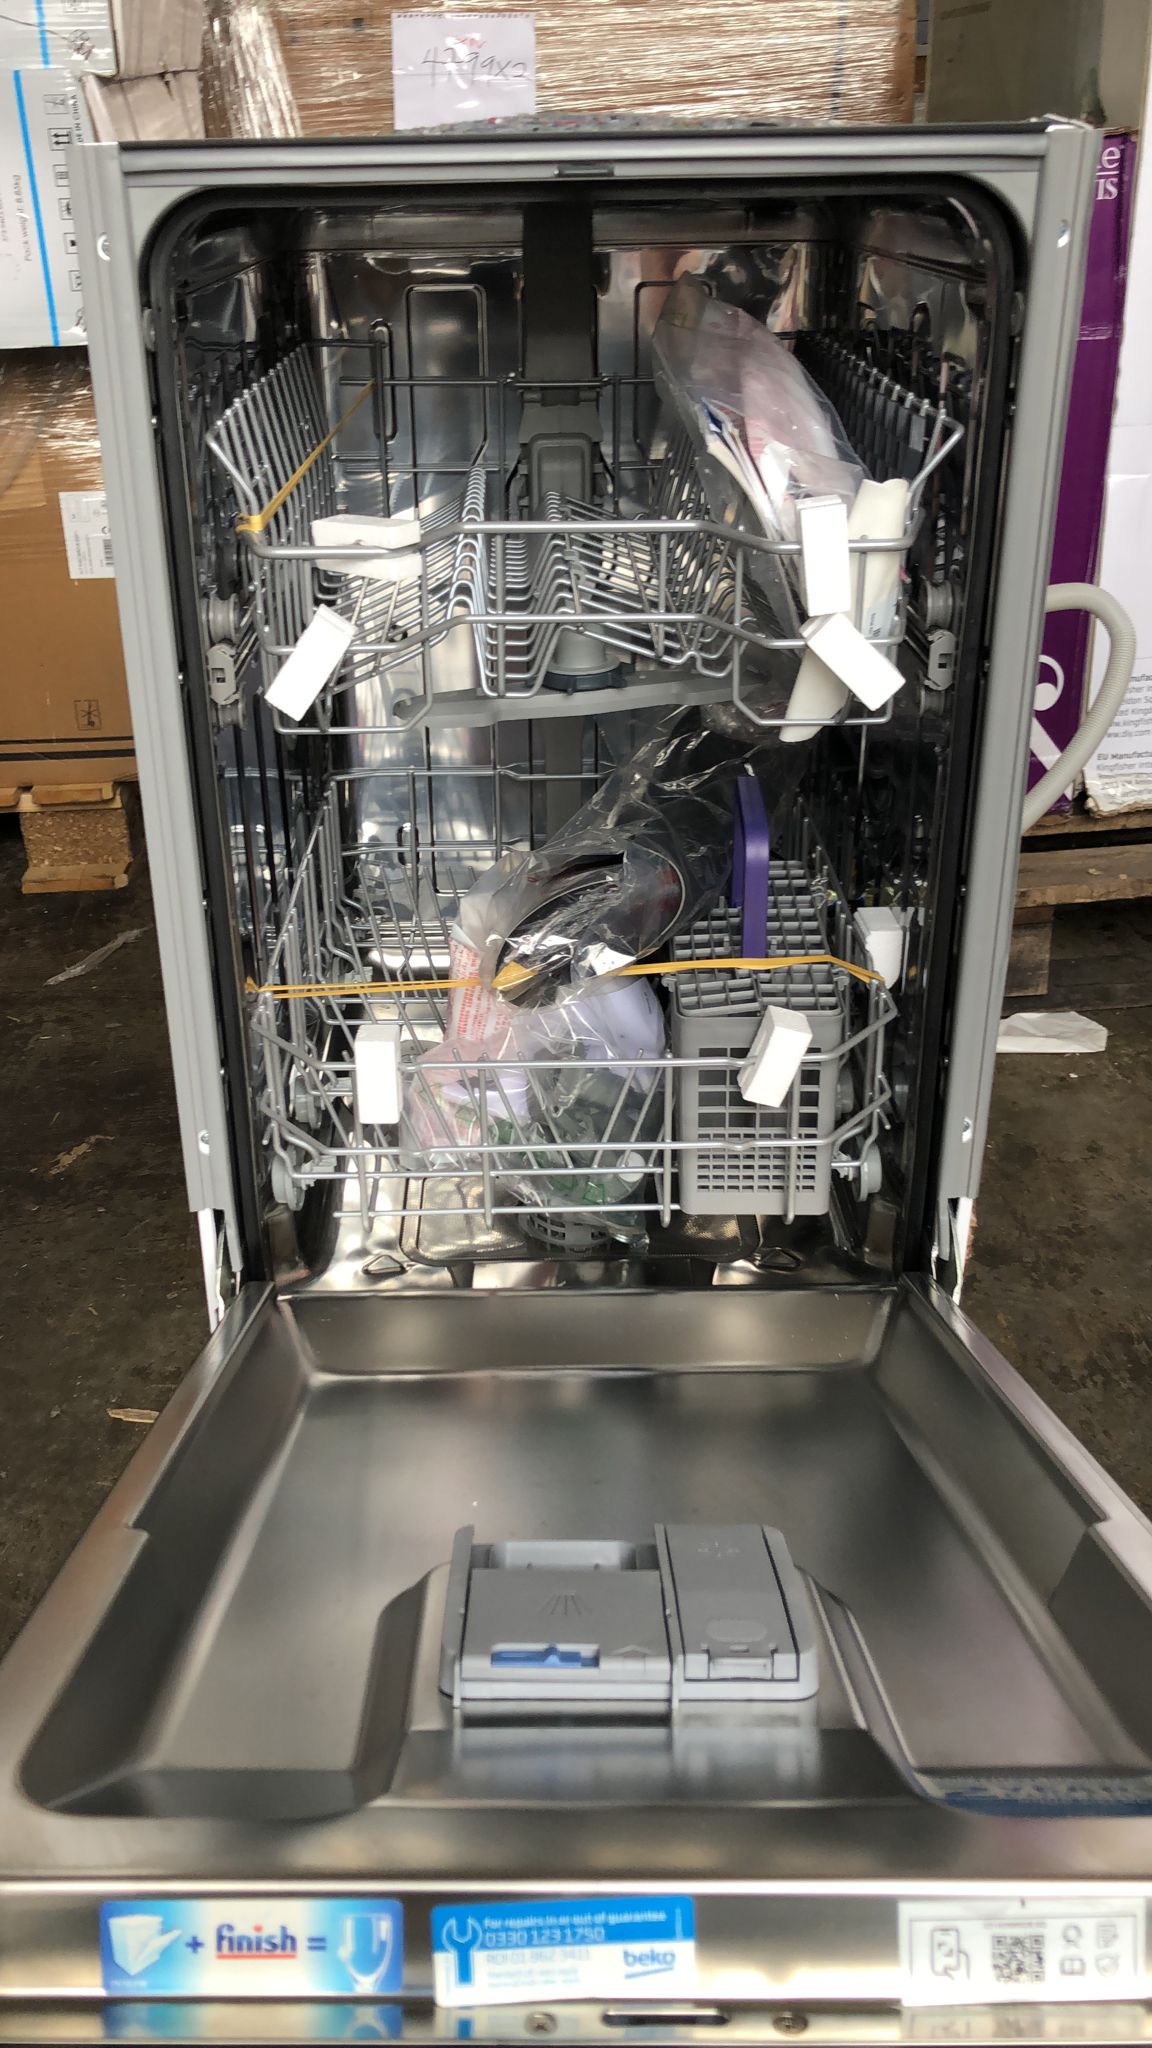 Beko-Integrated Dishwasher-DIS15Q20-8259